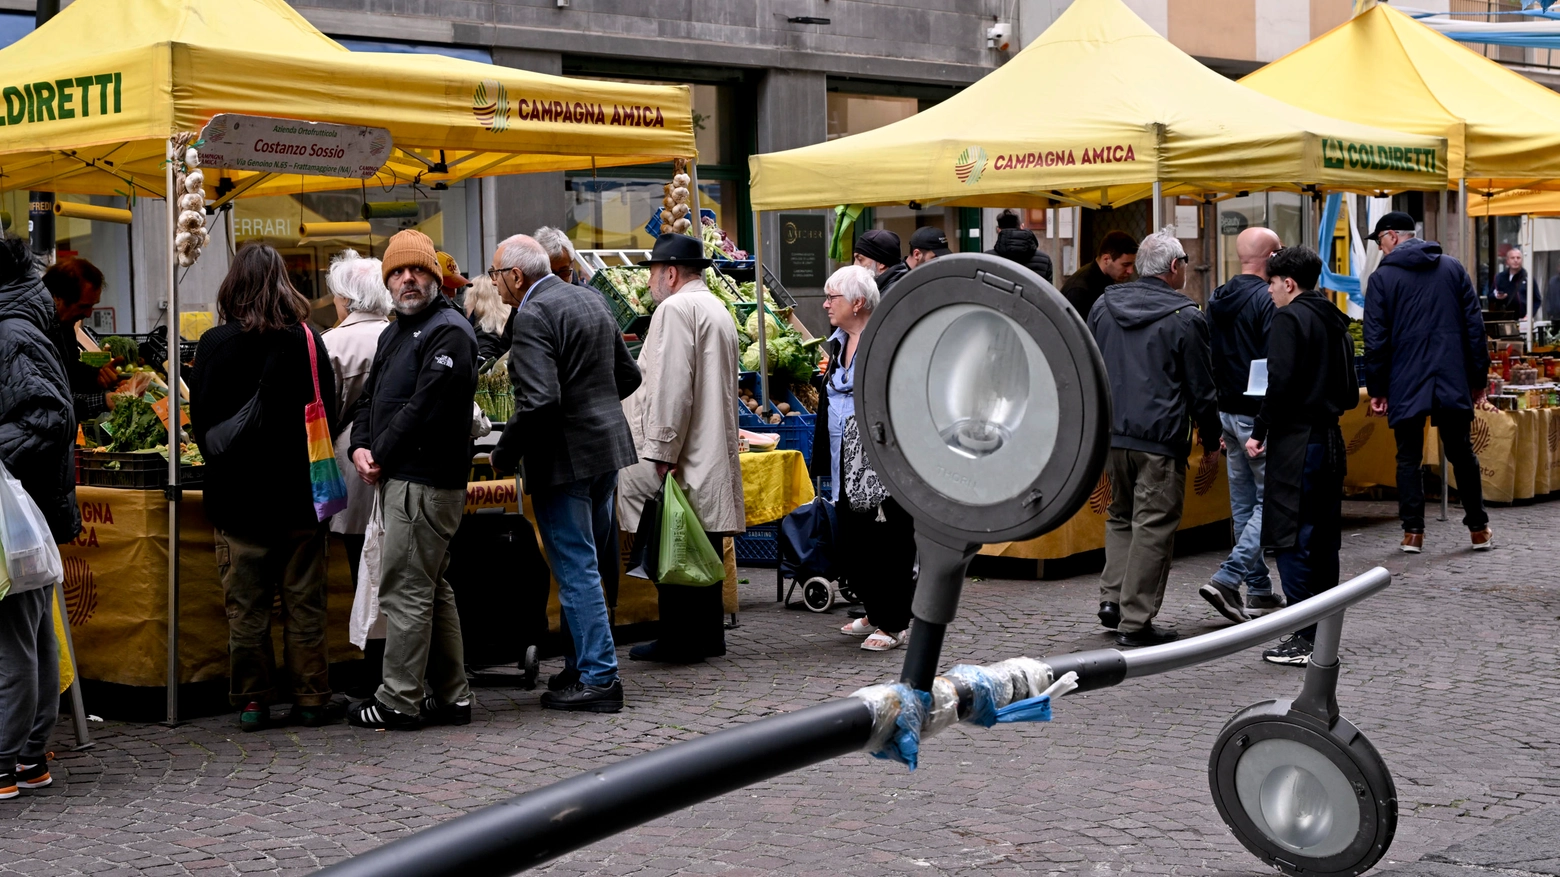 Cade un lampione su tenda mercatino a Napoli, tragedia sfiorata